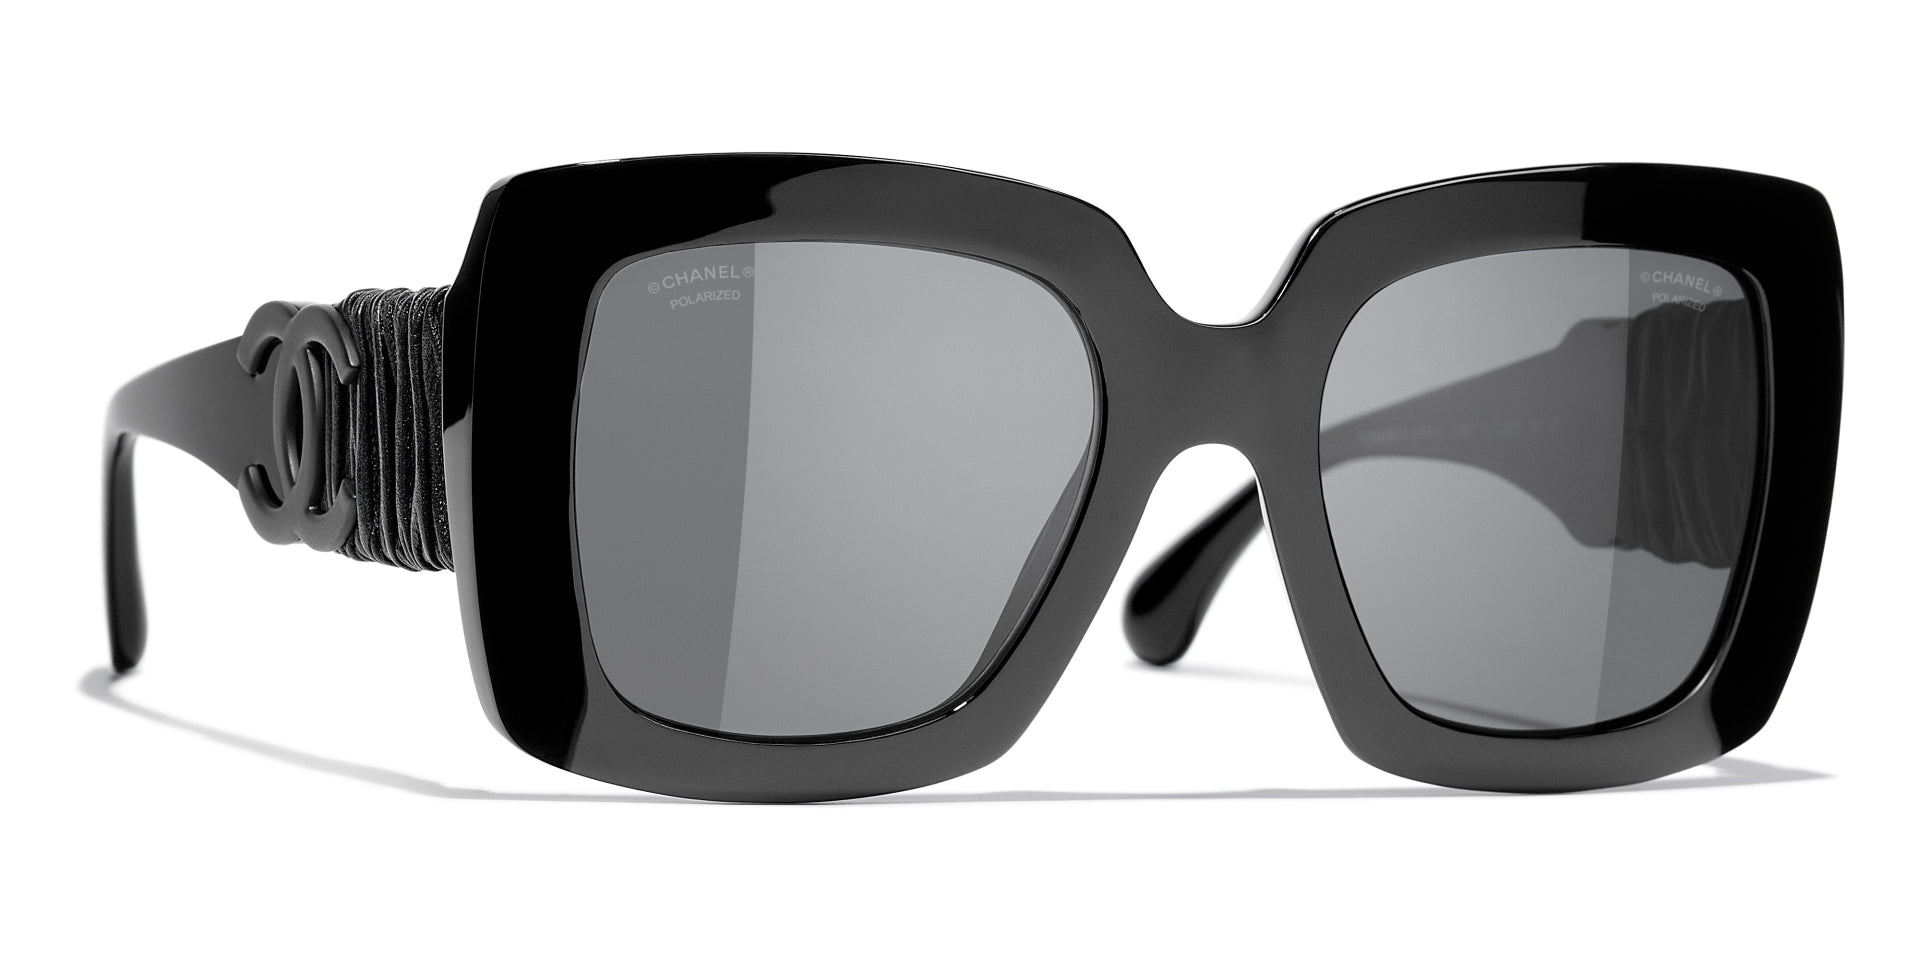 Chanel Women's Square Polarized Sunglasses